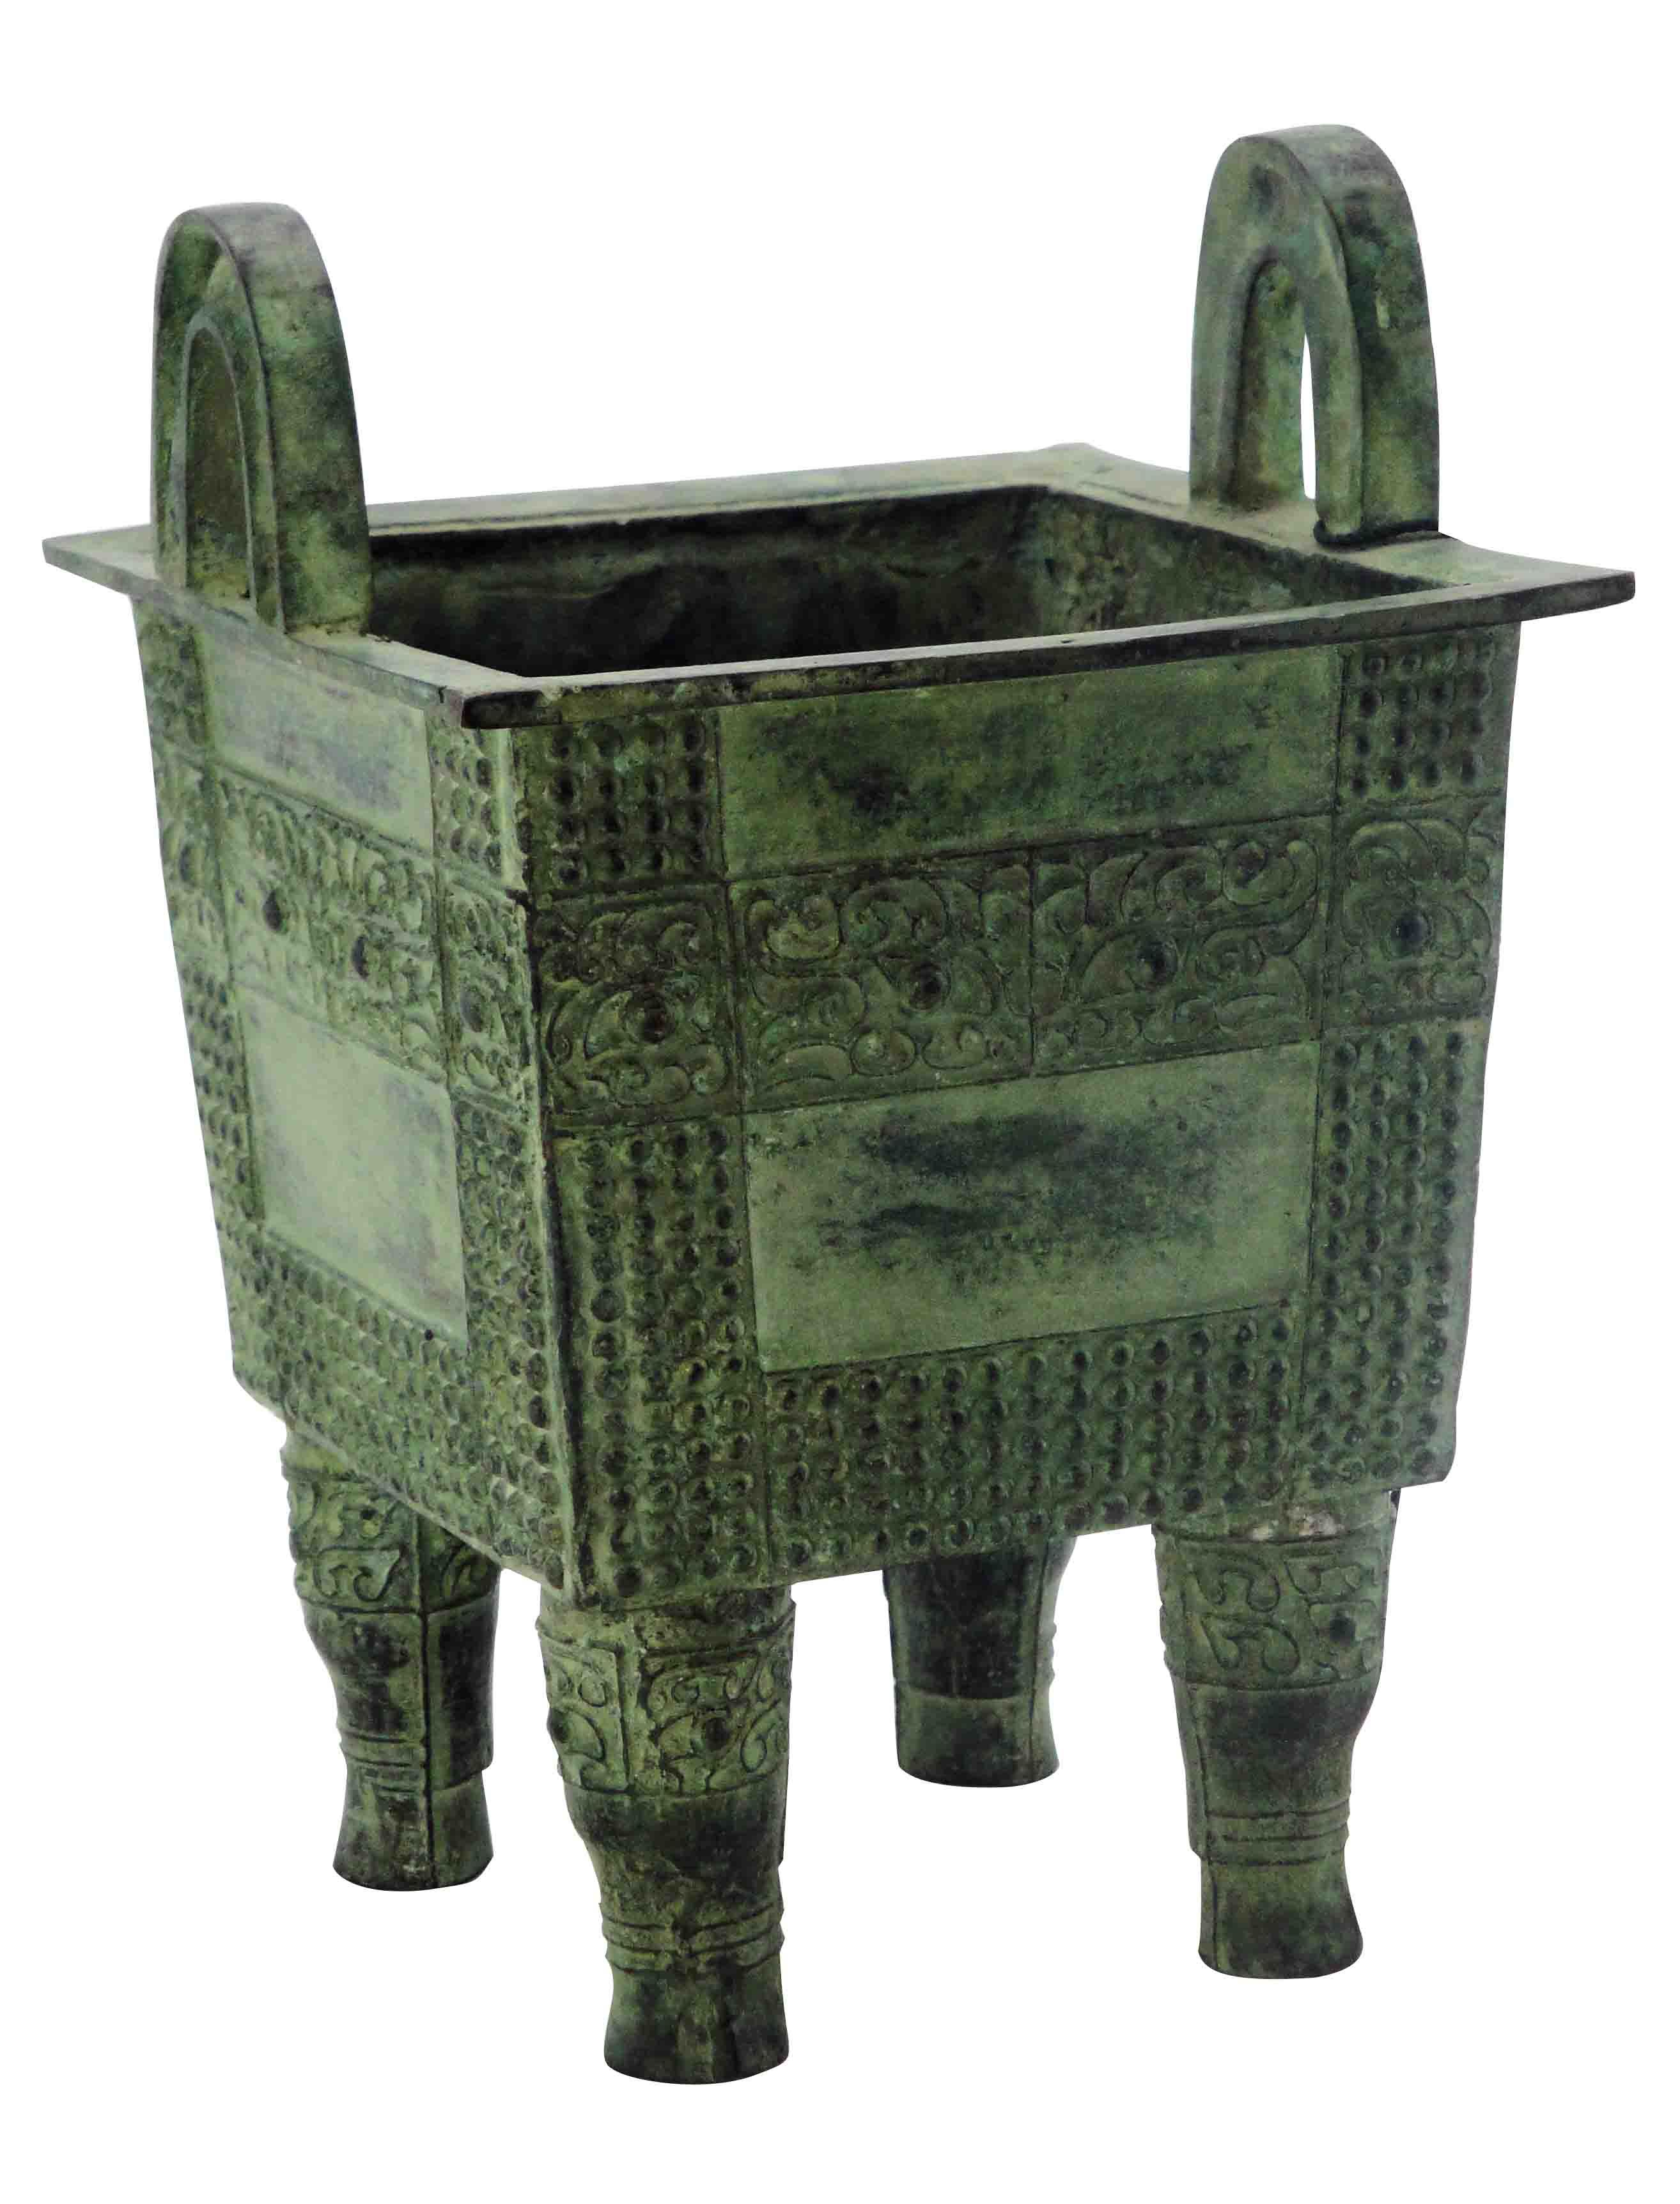 【陕西文物览】青铜器——大克鼎:上海博物馆的镇馆之宝 - 西部网（陕西新闻网）